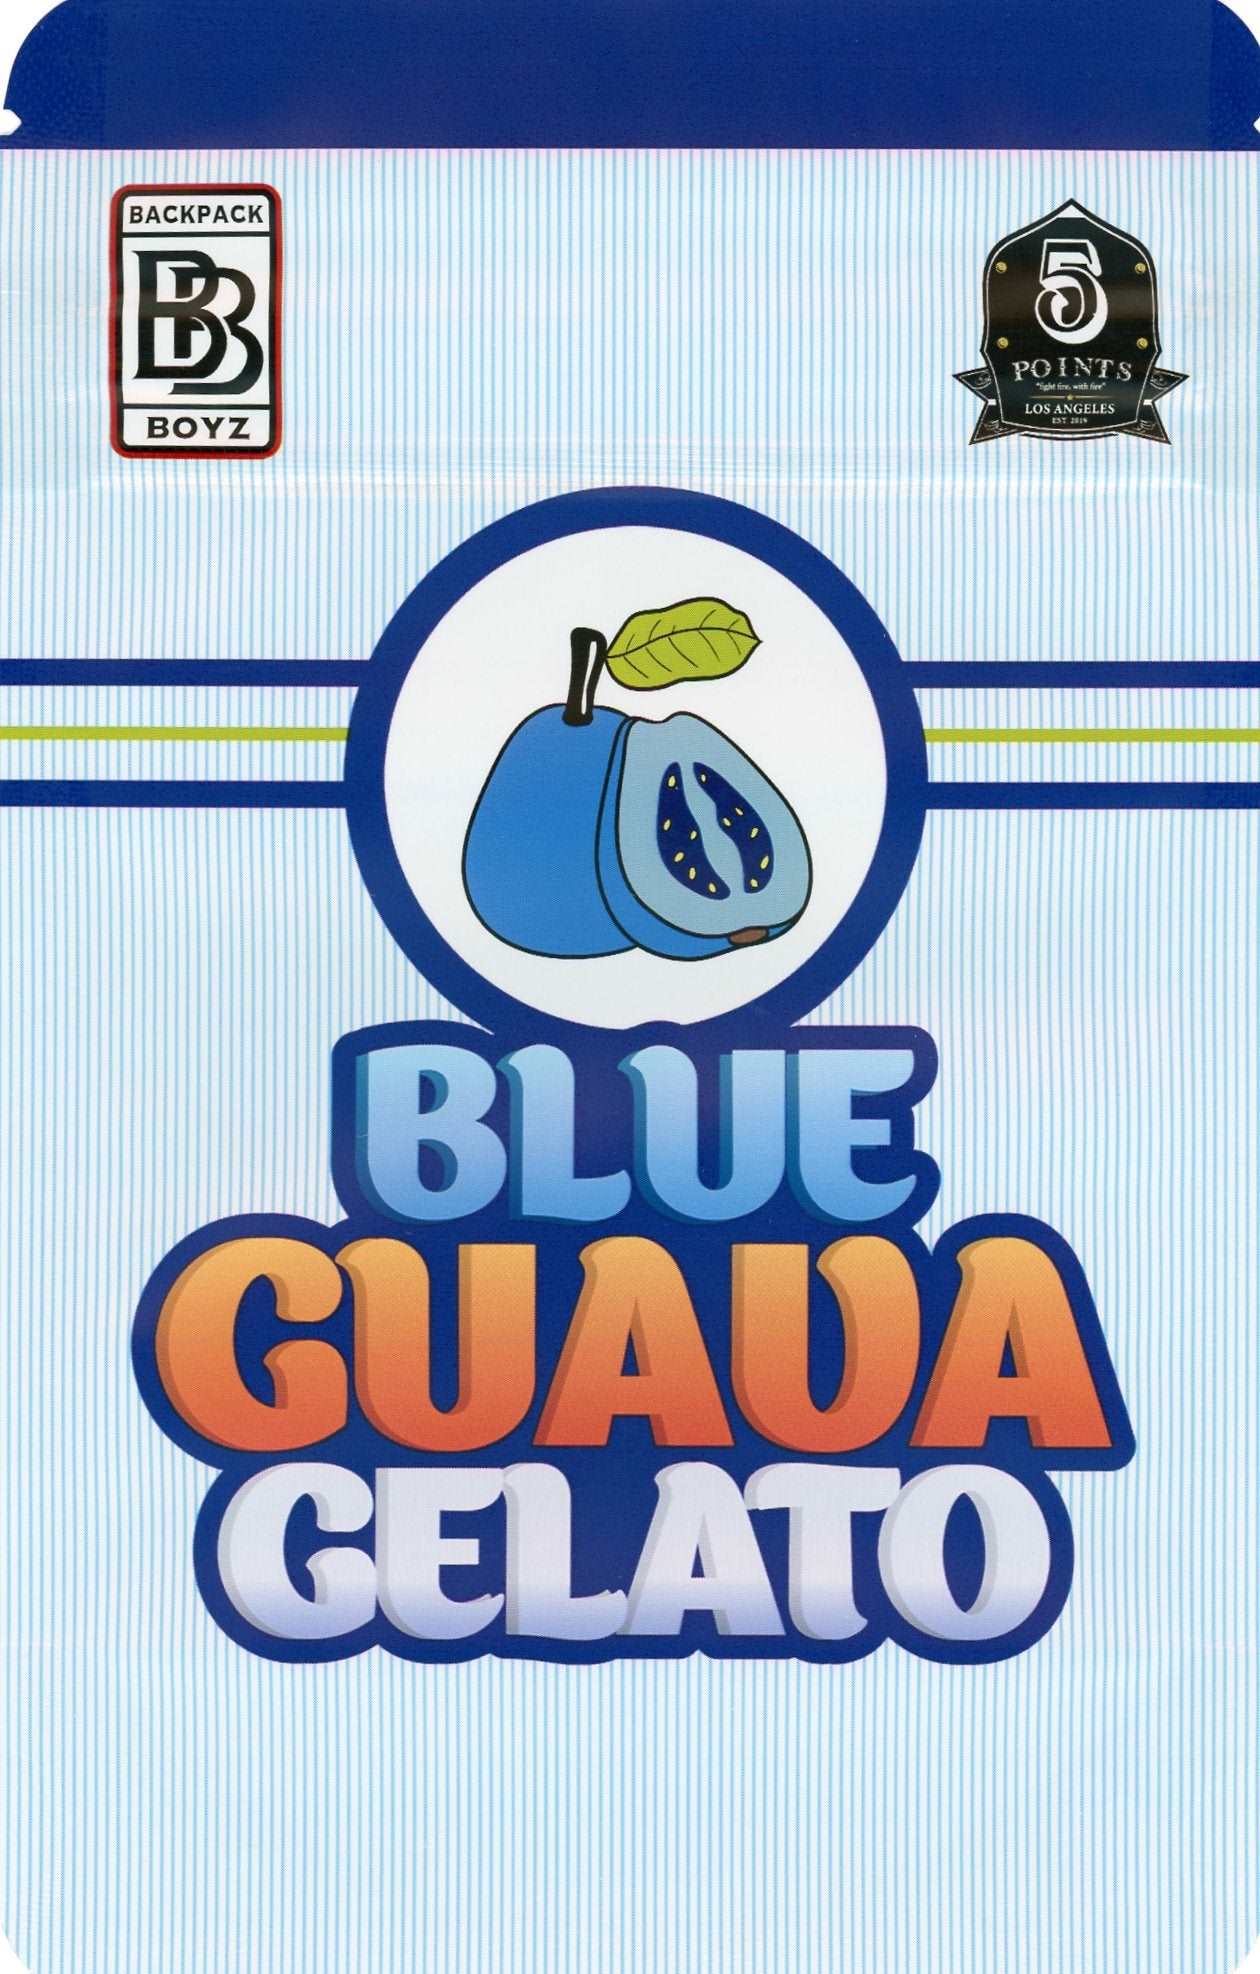 Backpack Boyz Mylar Bags 3.5g - Blue Guava Gelato